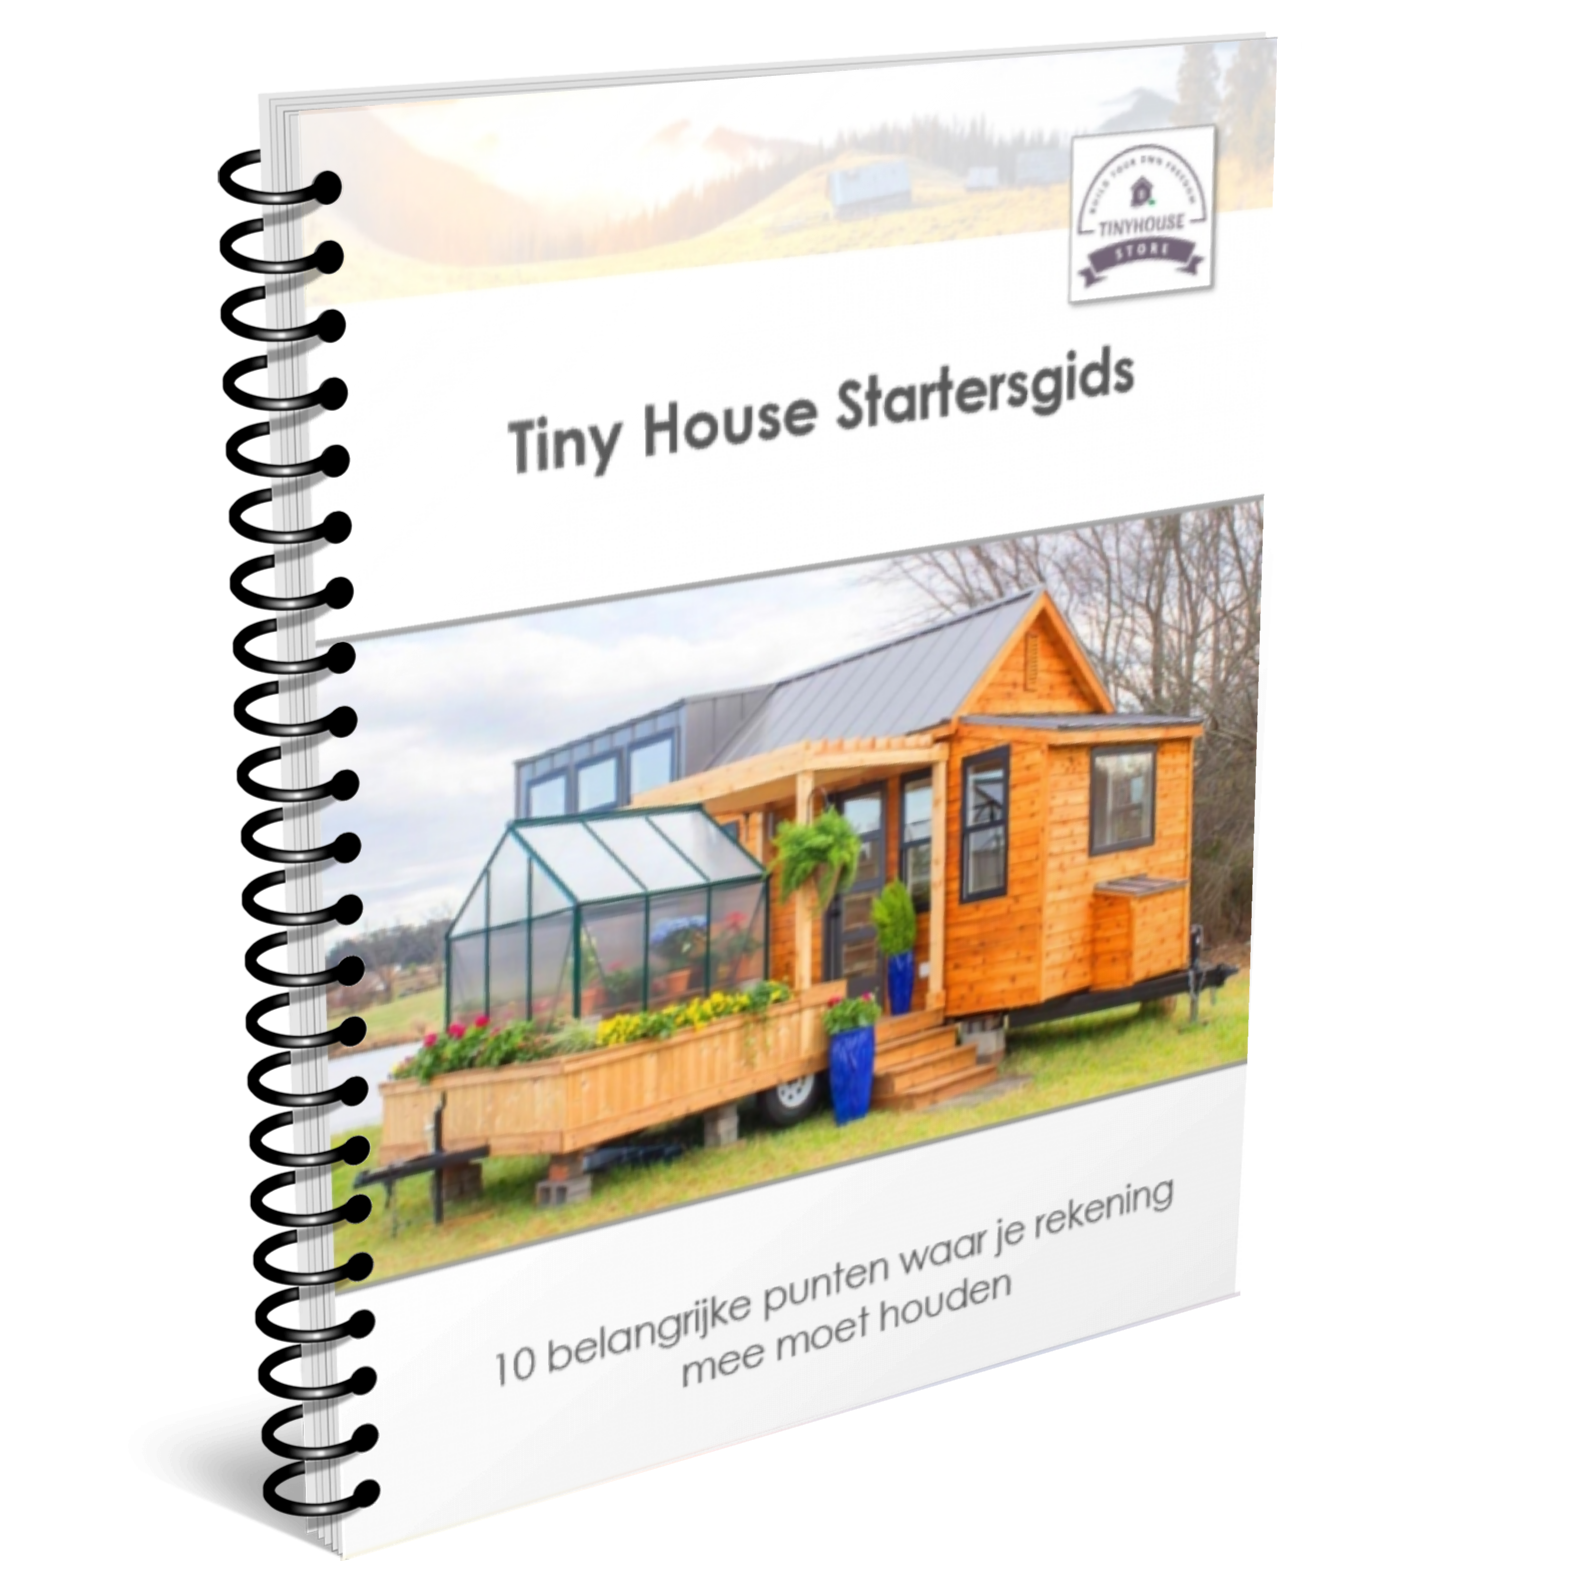 Tiny House Store Startersgids voor alle praktische informatie omtrent Tiny Houses